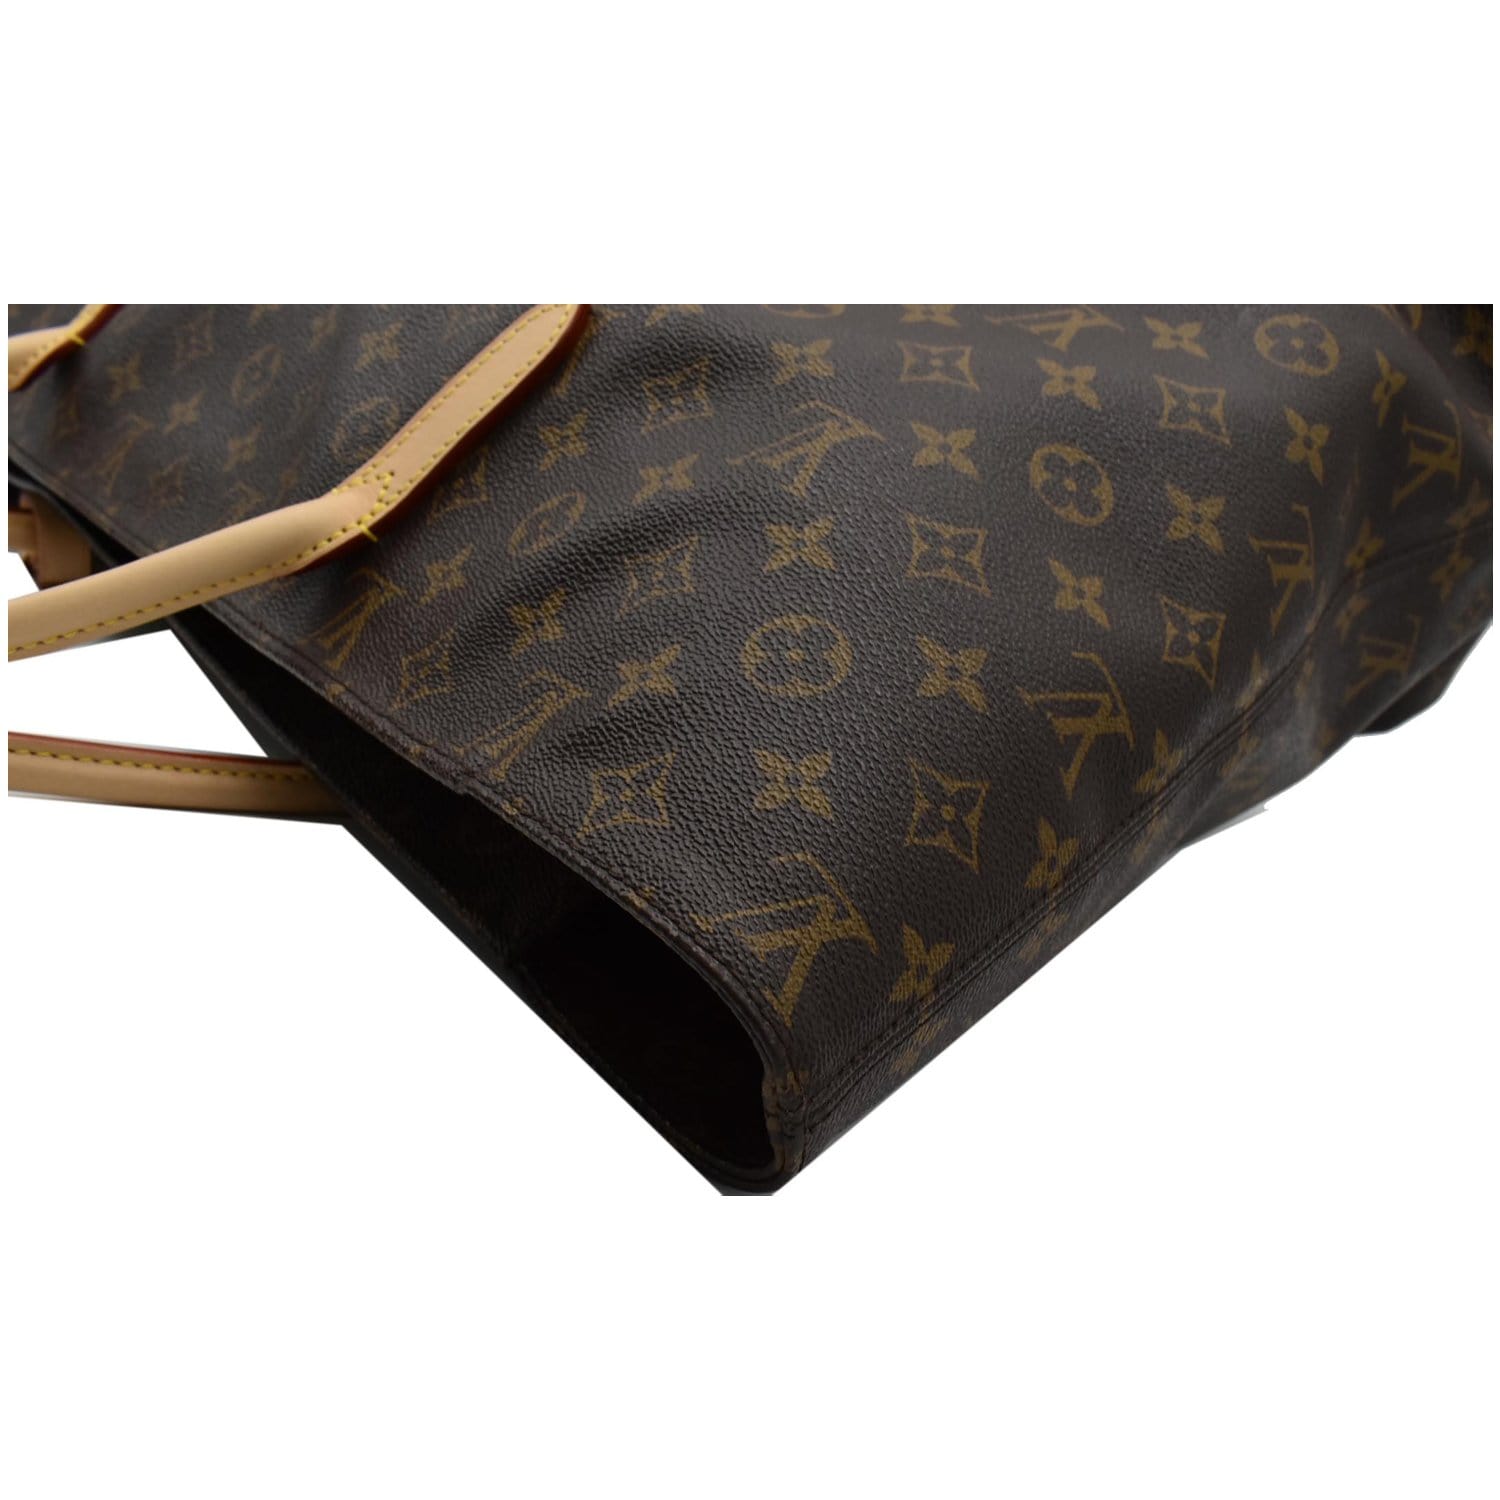 Authentic Louis Vuitton Brown Monogram Canvas Raspail PM Shoulder Bag Tote